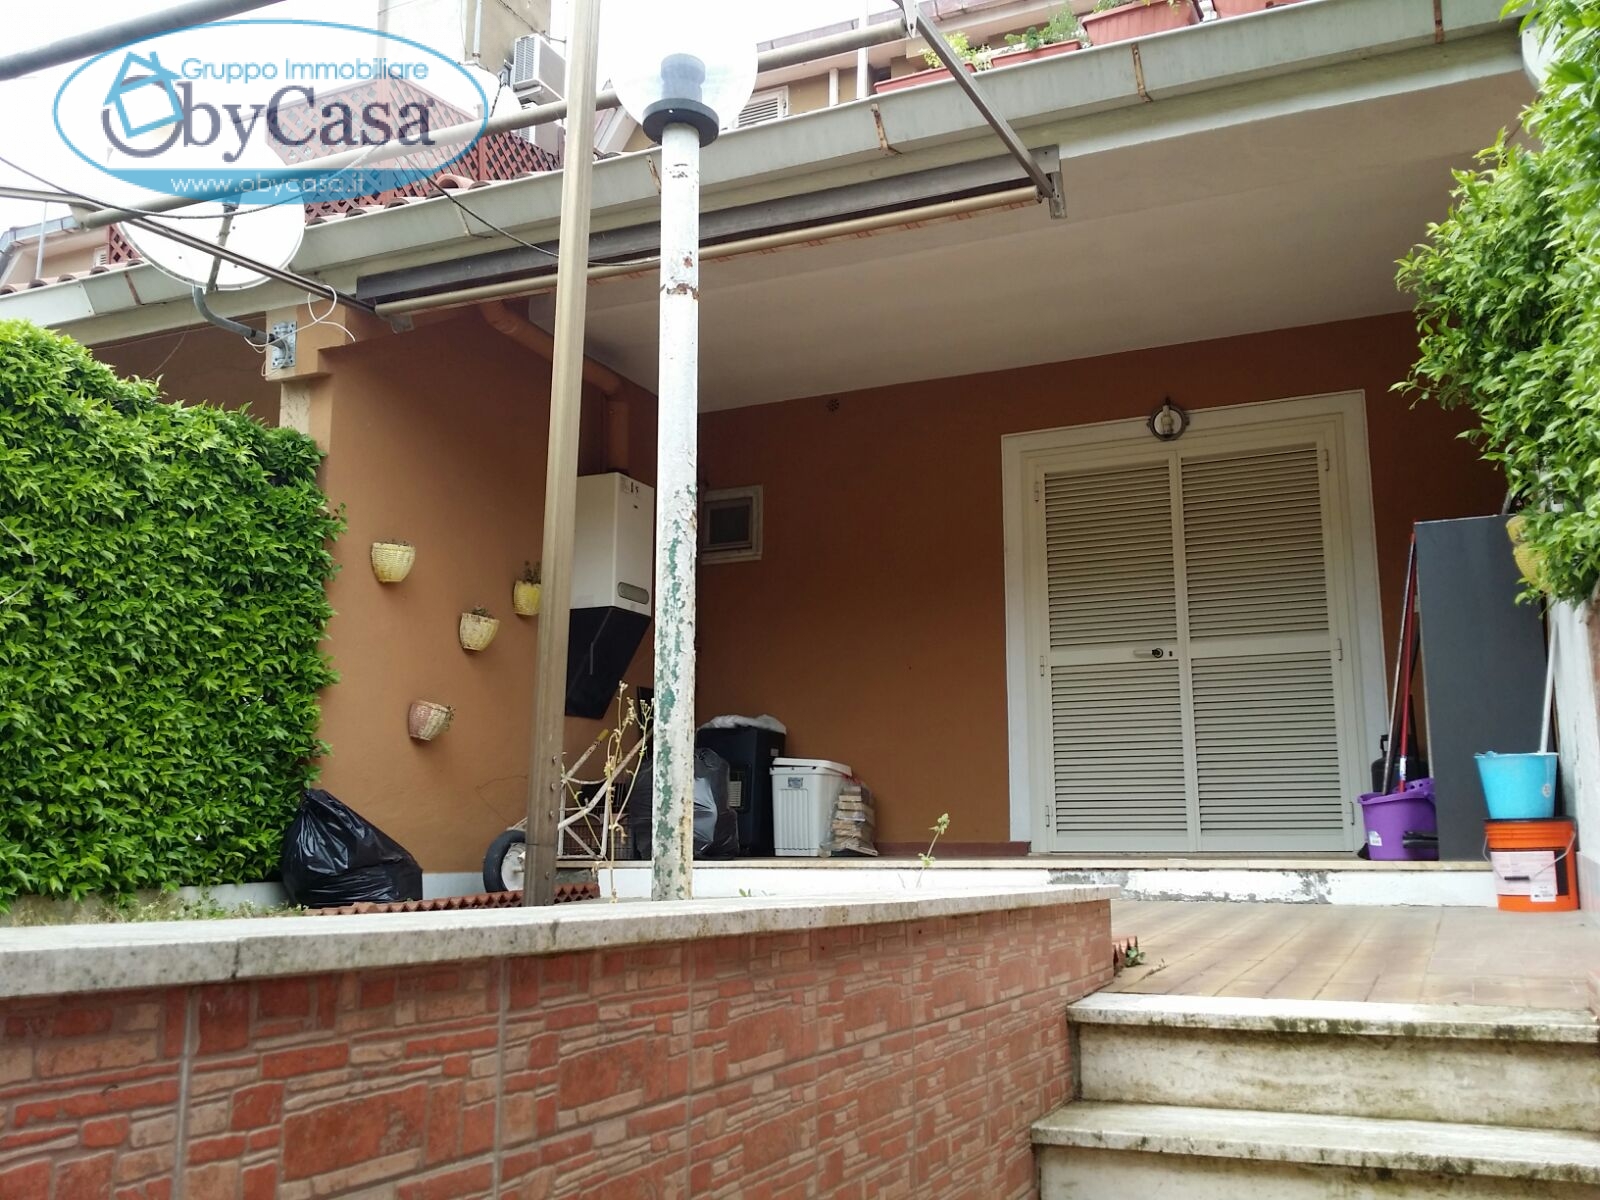 Villa a Schiera in vendita a Manziana, 2 locali, prezzo € 65.000 | CambioCasa.it